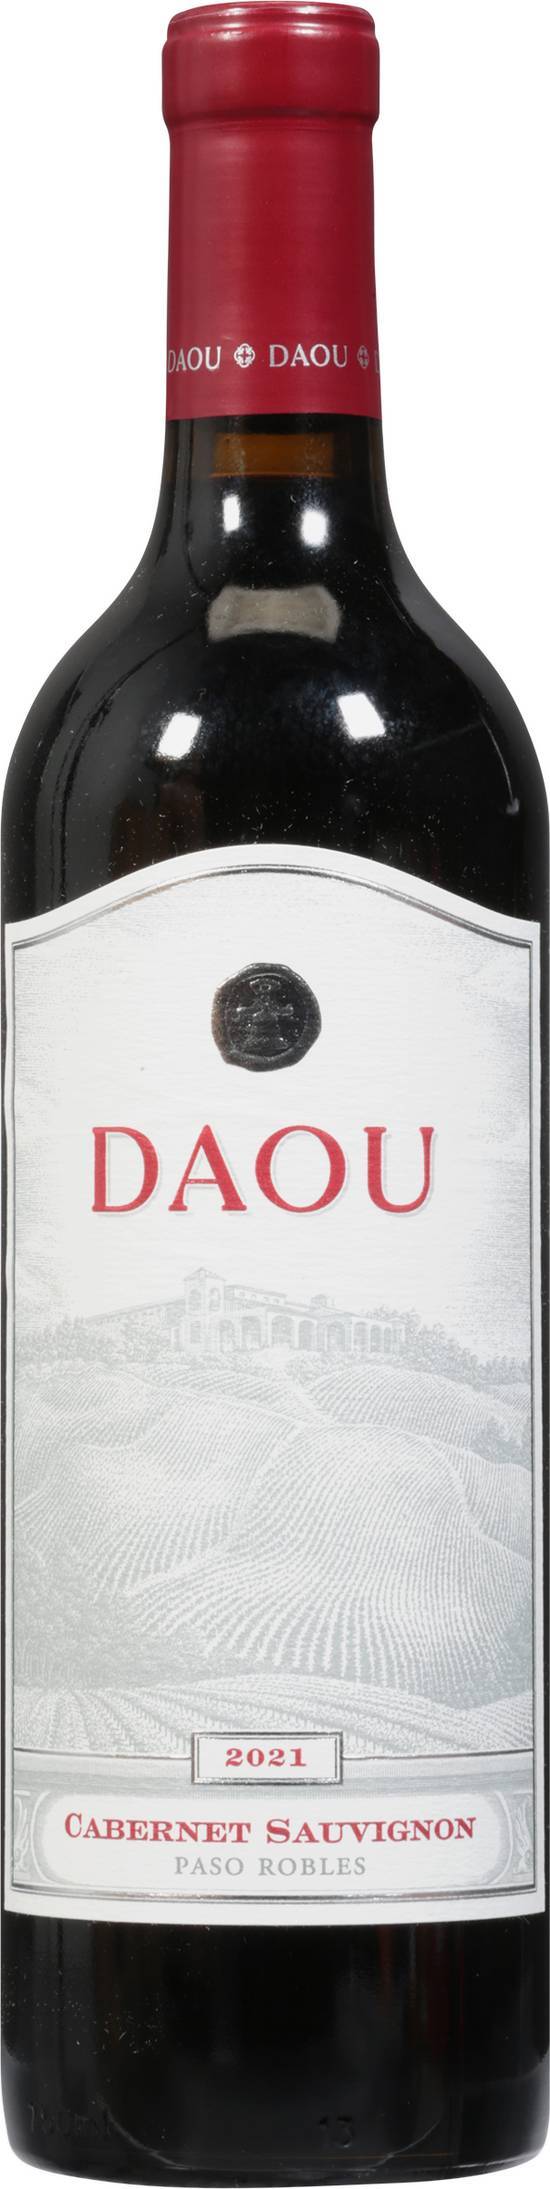 Daou Paso Robles Cabernet Sauvignon Wine 2021 (750 ml)